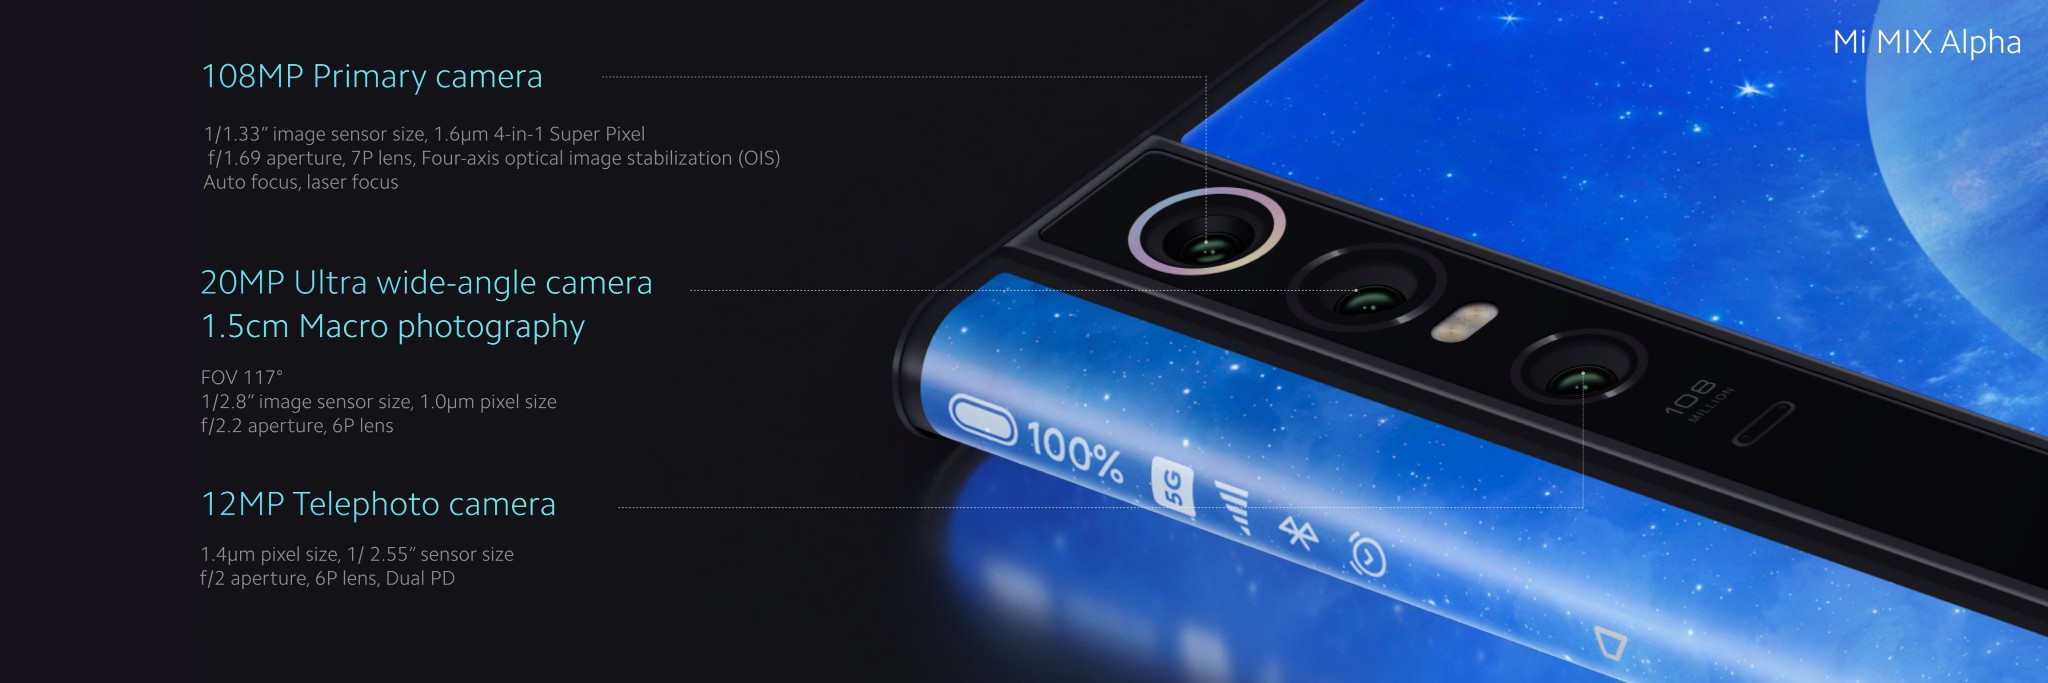 Cận cảnh Xiaomi Mi Mix Alpha: "siêu phẩm thiết kế" smartphone đương đại